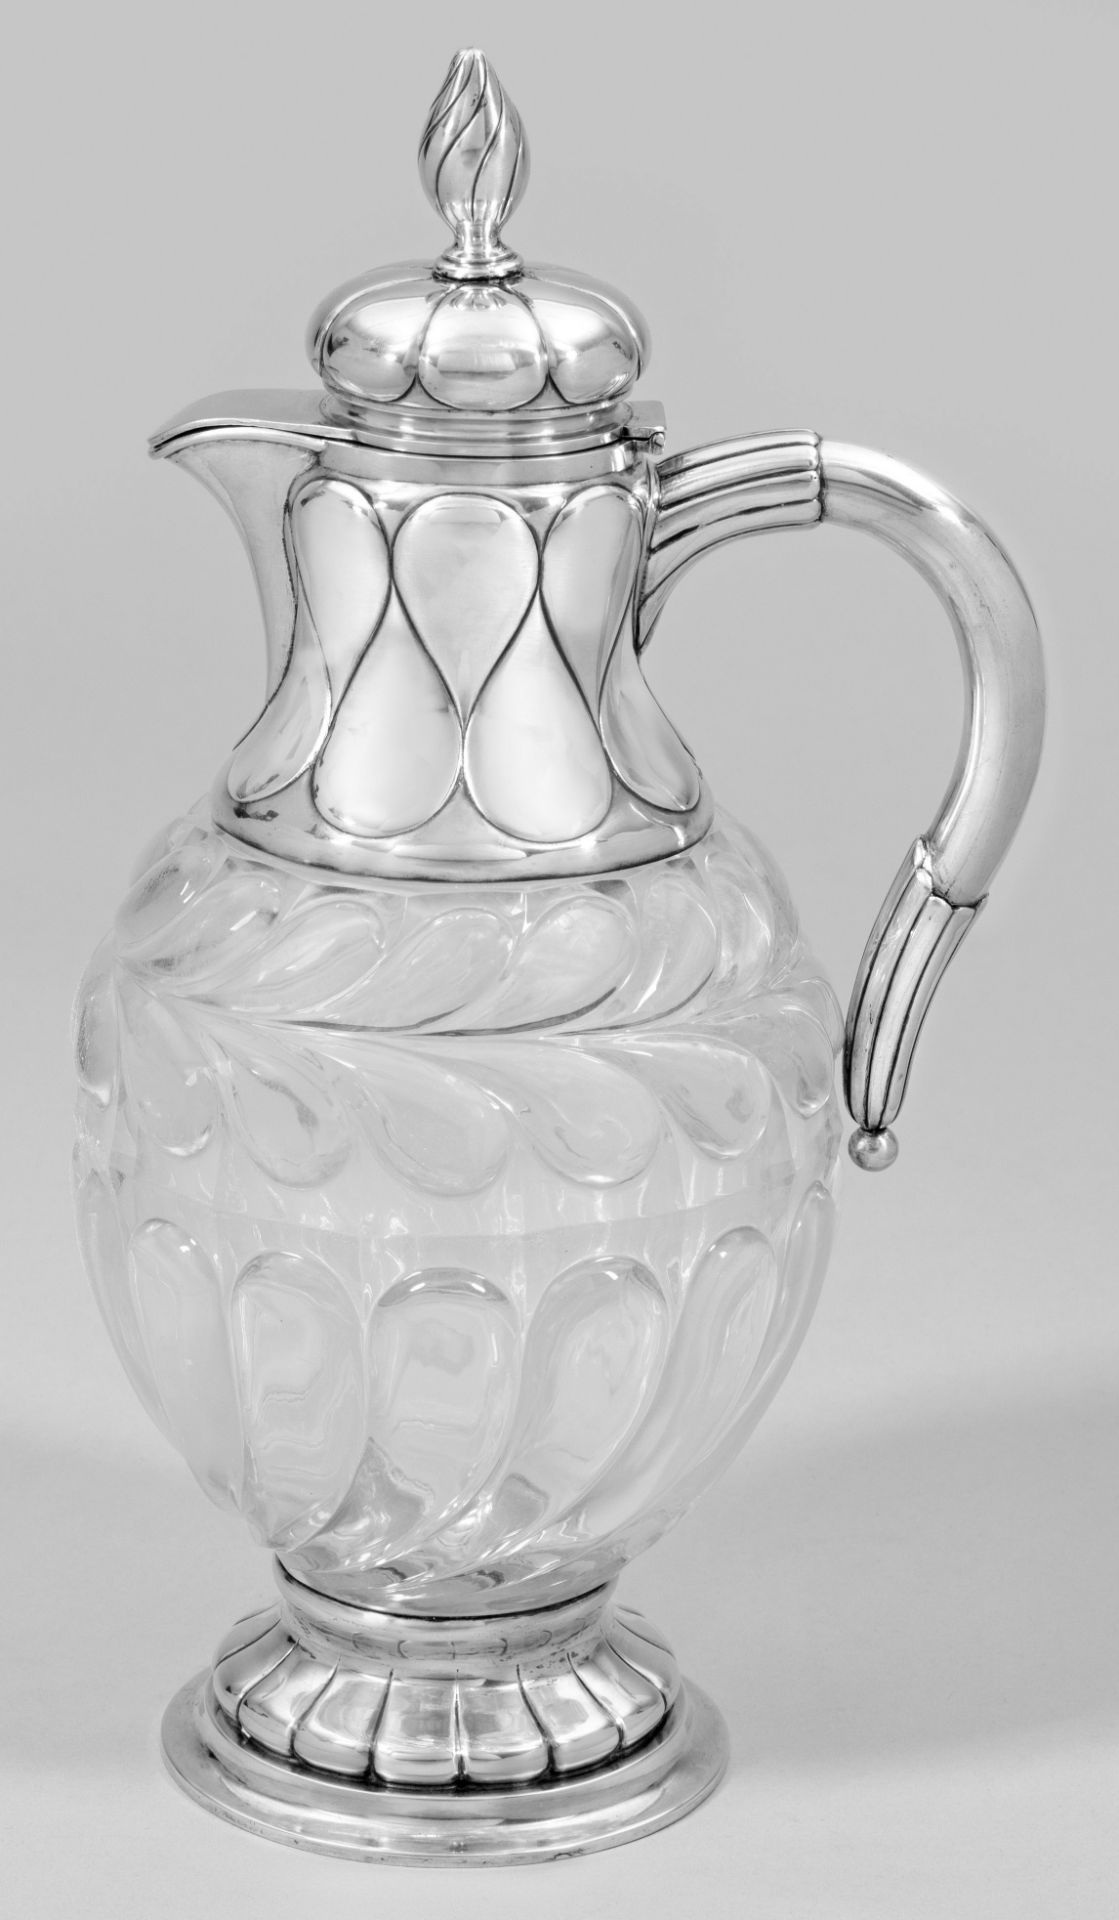 Äußerst seltene Kristallglaskaraffe von Peter-Karl Fabergé